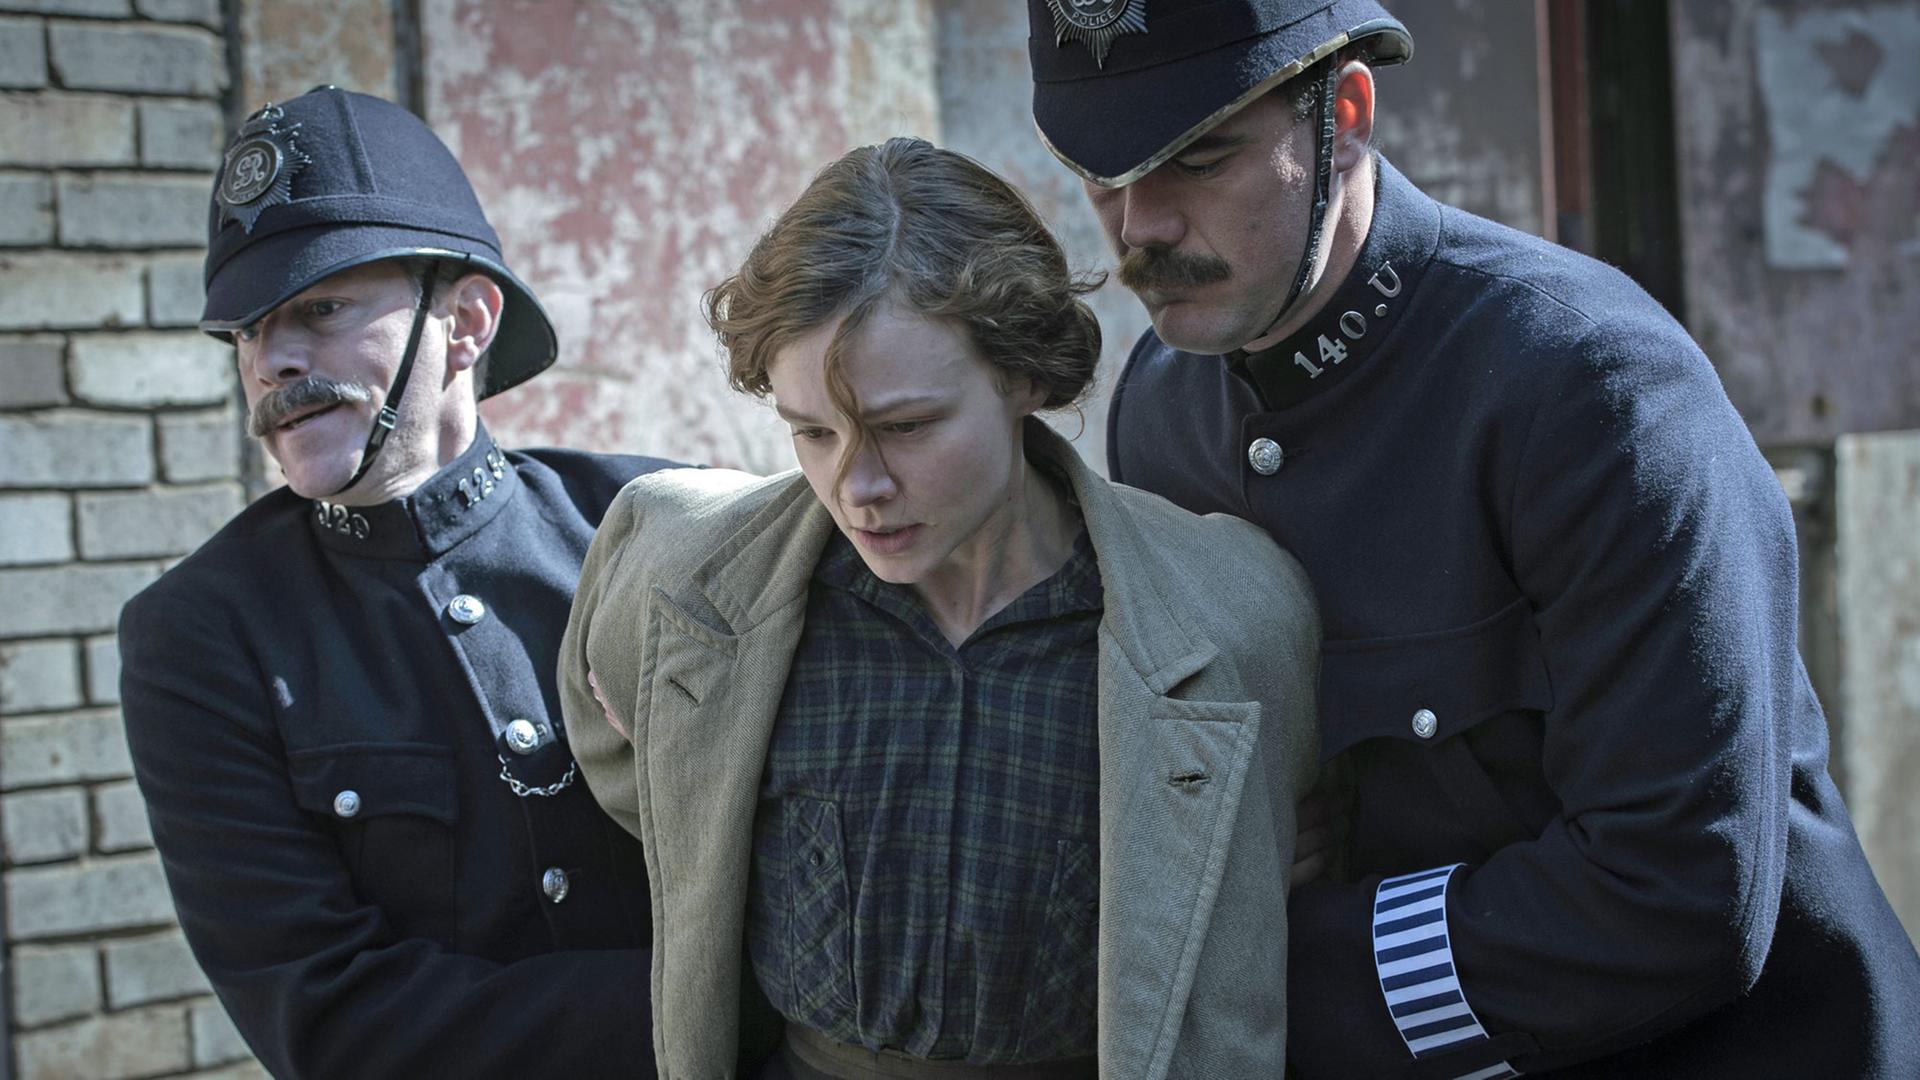 Szene aus "Suffragette" von Sarah Gavron: Maud (dargestellt von Carey Mulligan) wird von zwei Polizisten verhaftet und abgeführt.